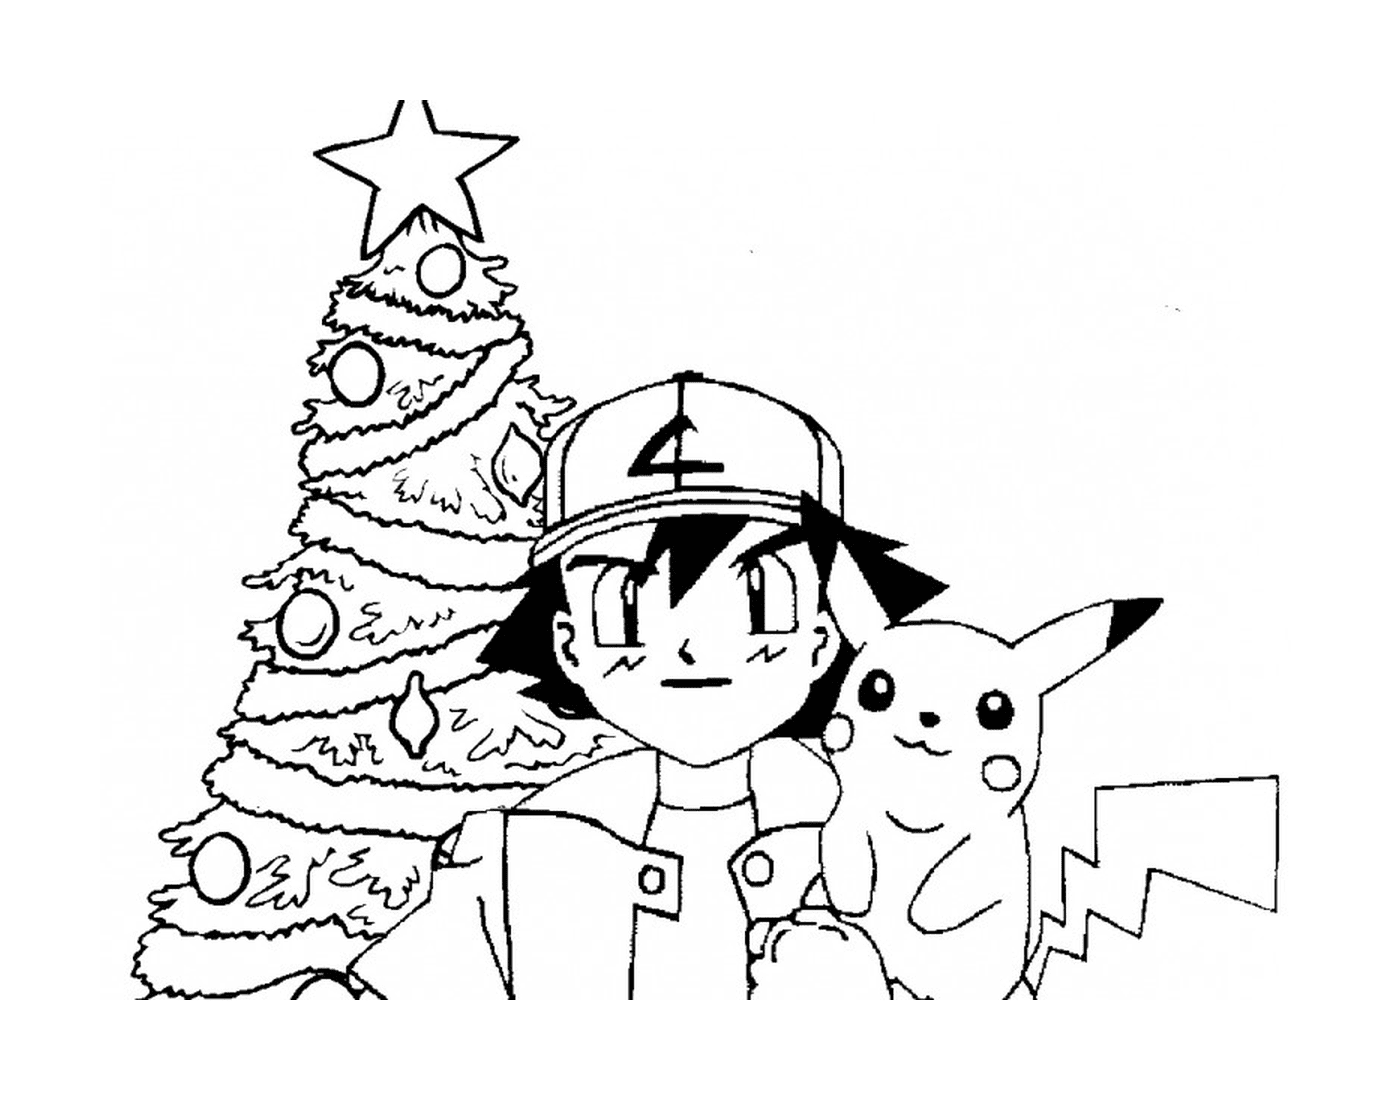  Sacha und Pikachu feiern Weihnachten 